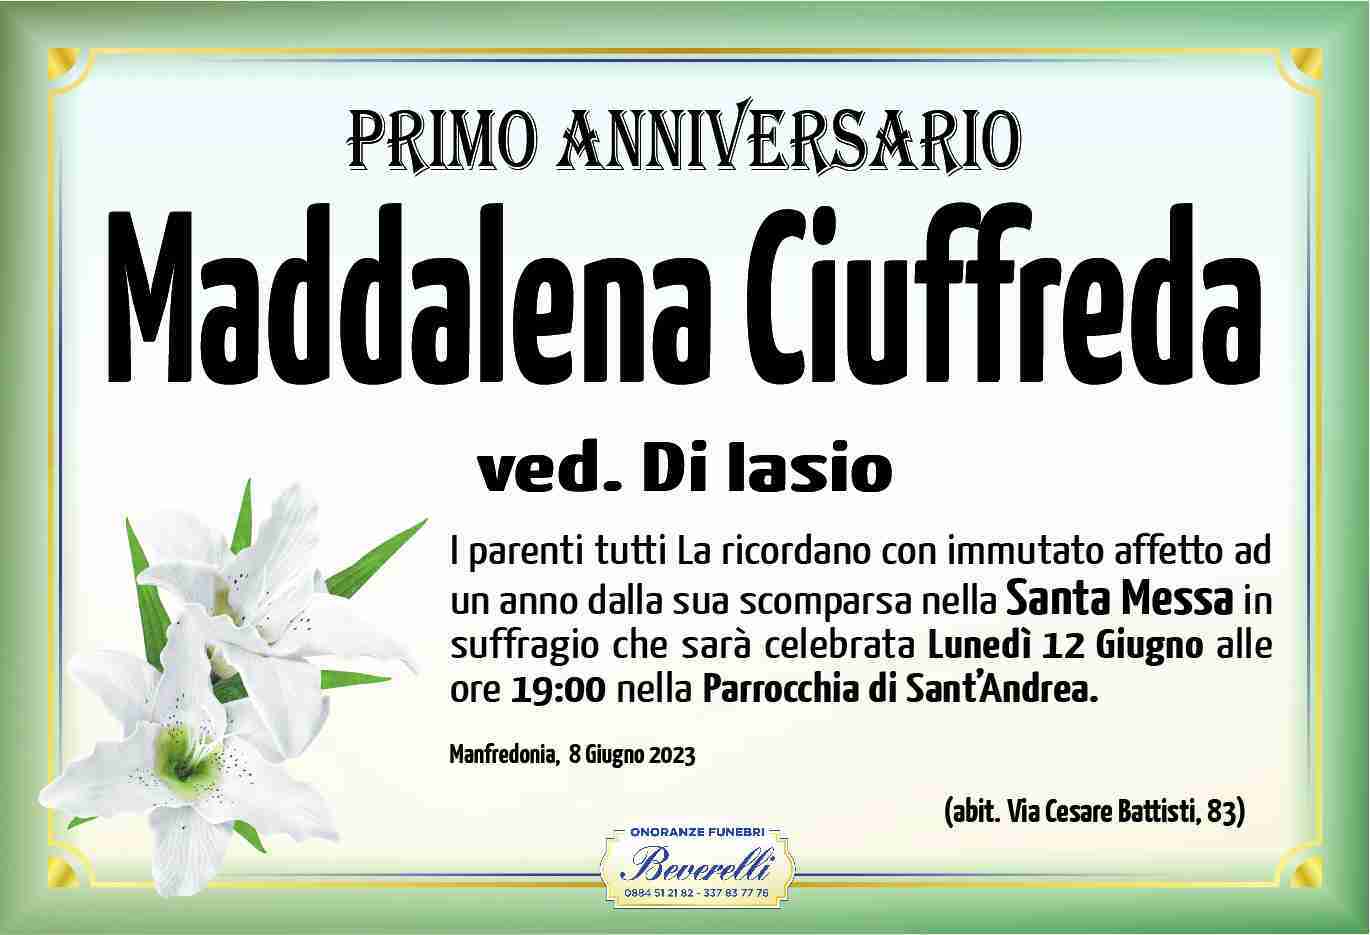 Maddalena Ciuffreda